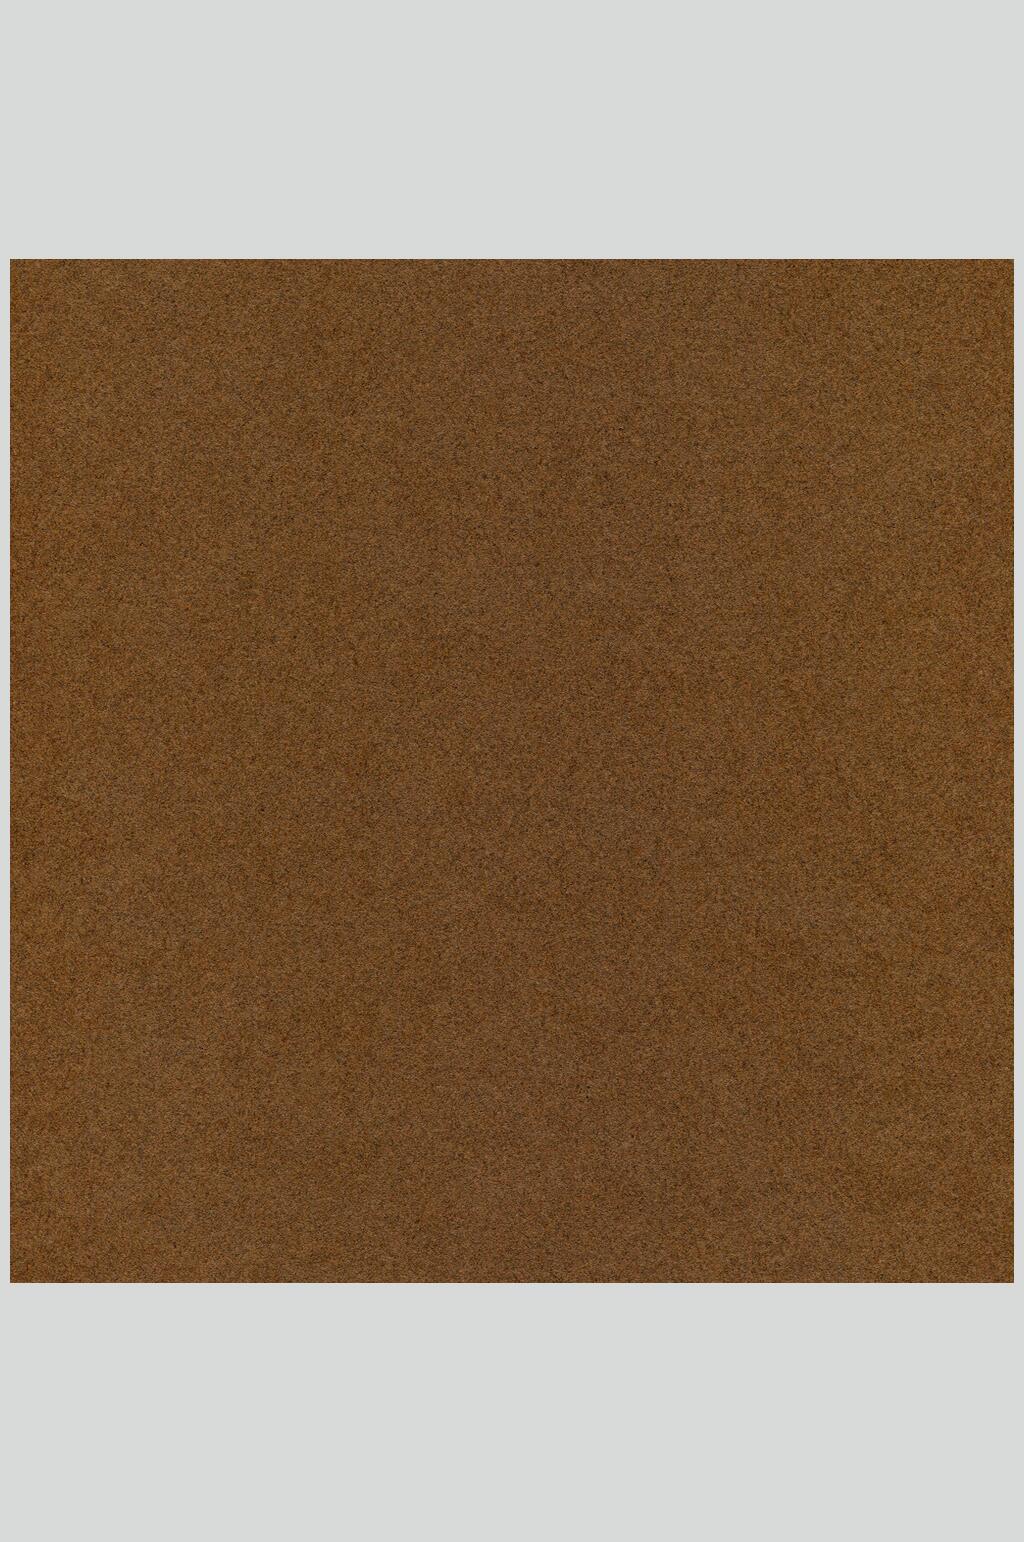 褐色特殊纸张肌理背景图片